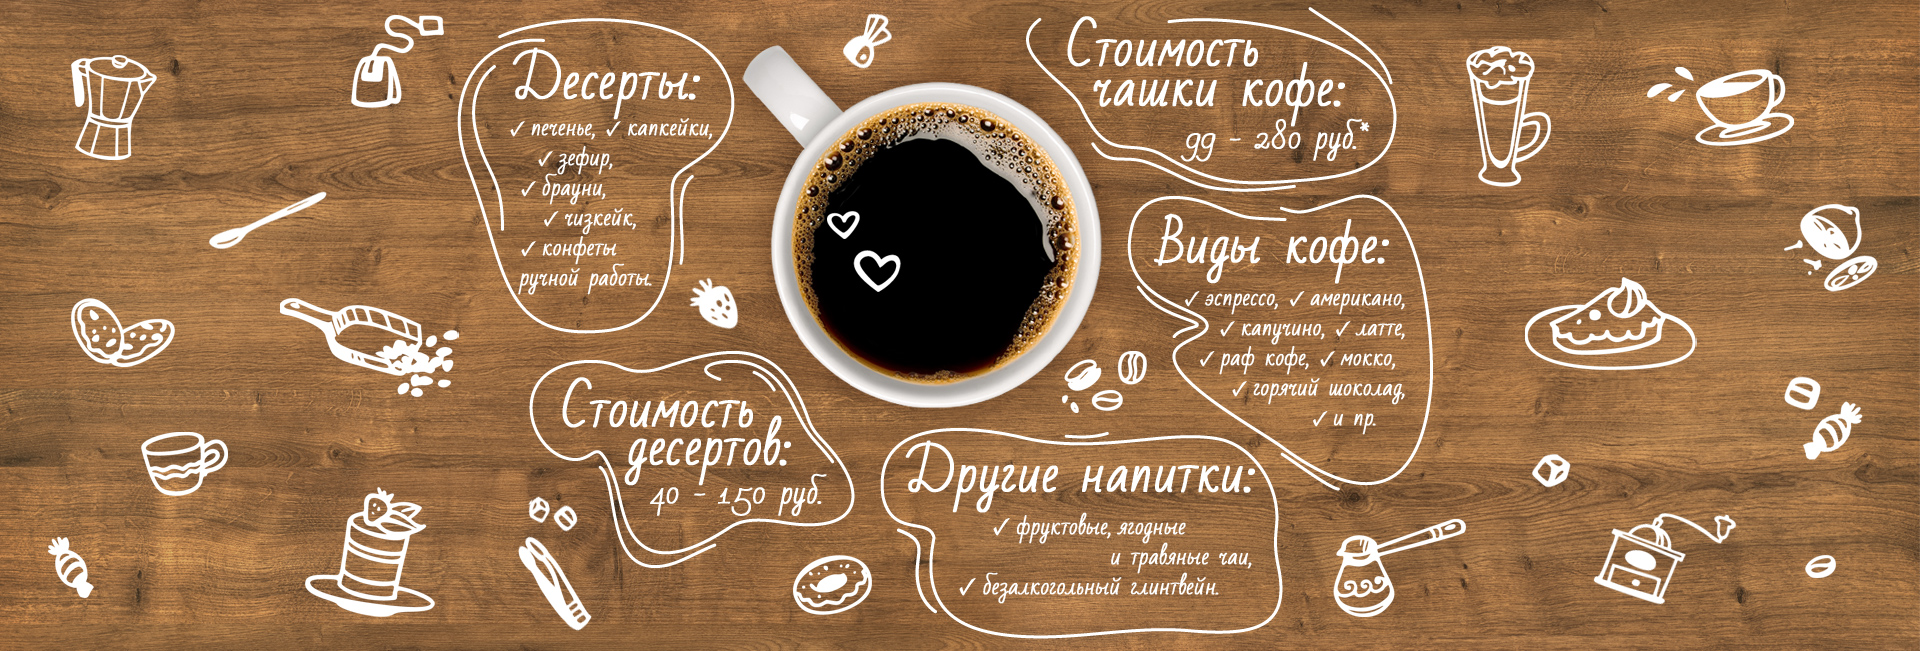 Кофе городок. Реклама кофейни. Реклама кофе. Рекламный баннер кофе. Рекламные макеты кофейни.